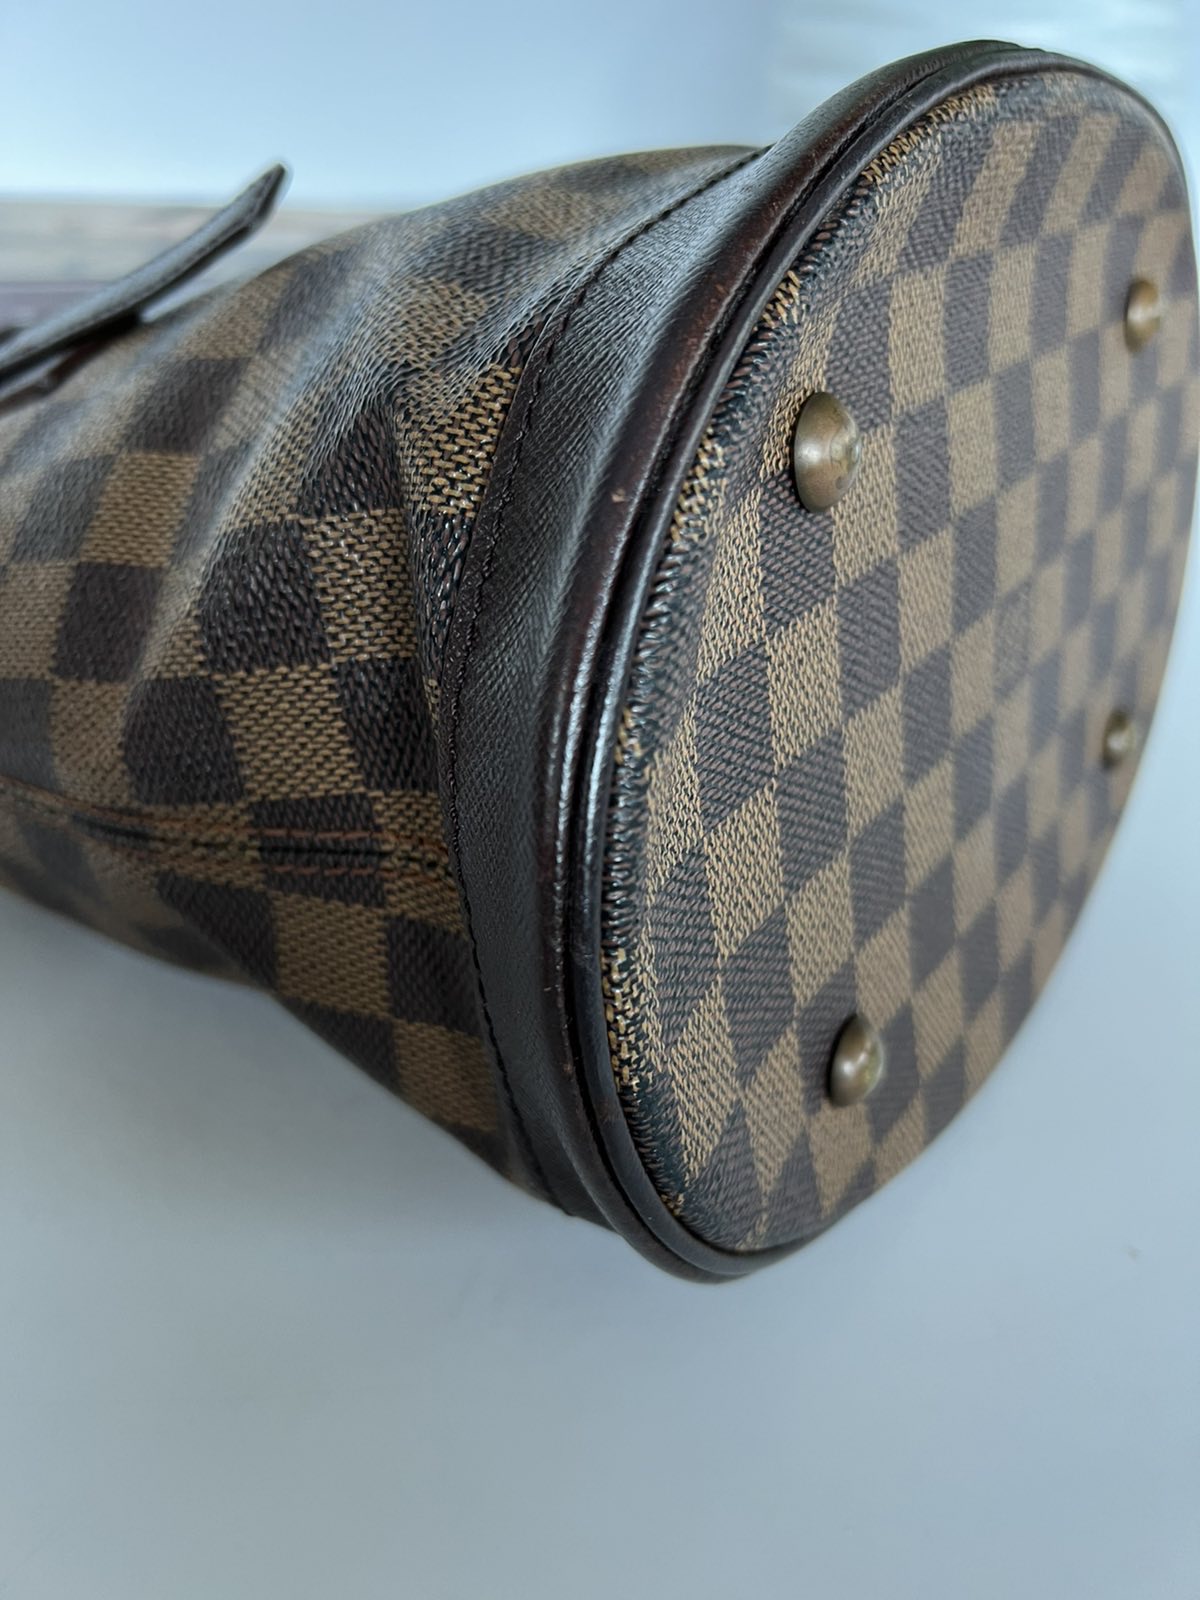 Louis Vuitton Damier Ebene Marais Bucket Bag. DC: AR0928. Made in France.  With dustbag ❤️ - Canon E-Bags Prime